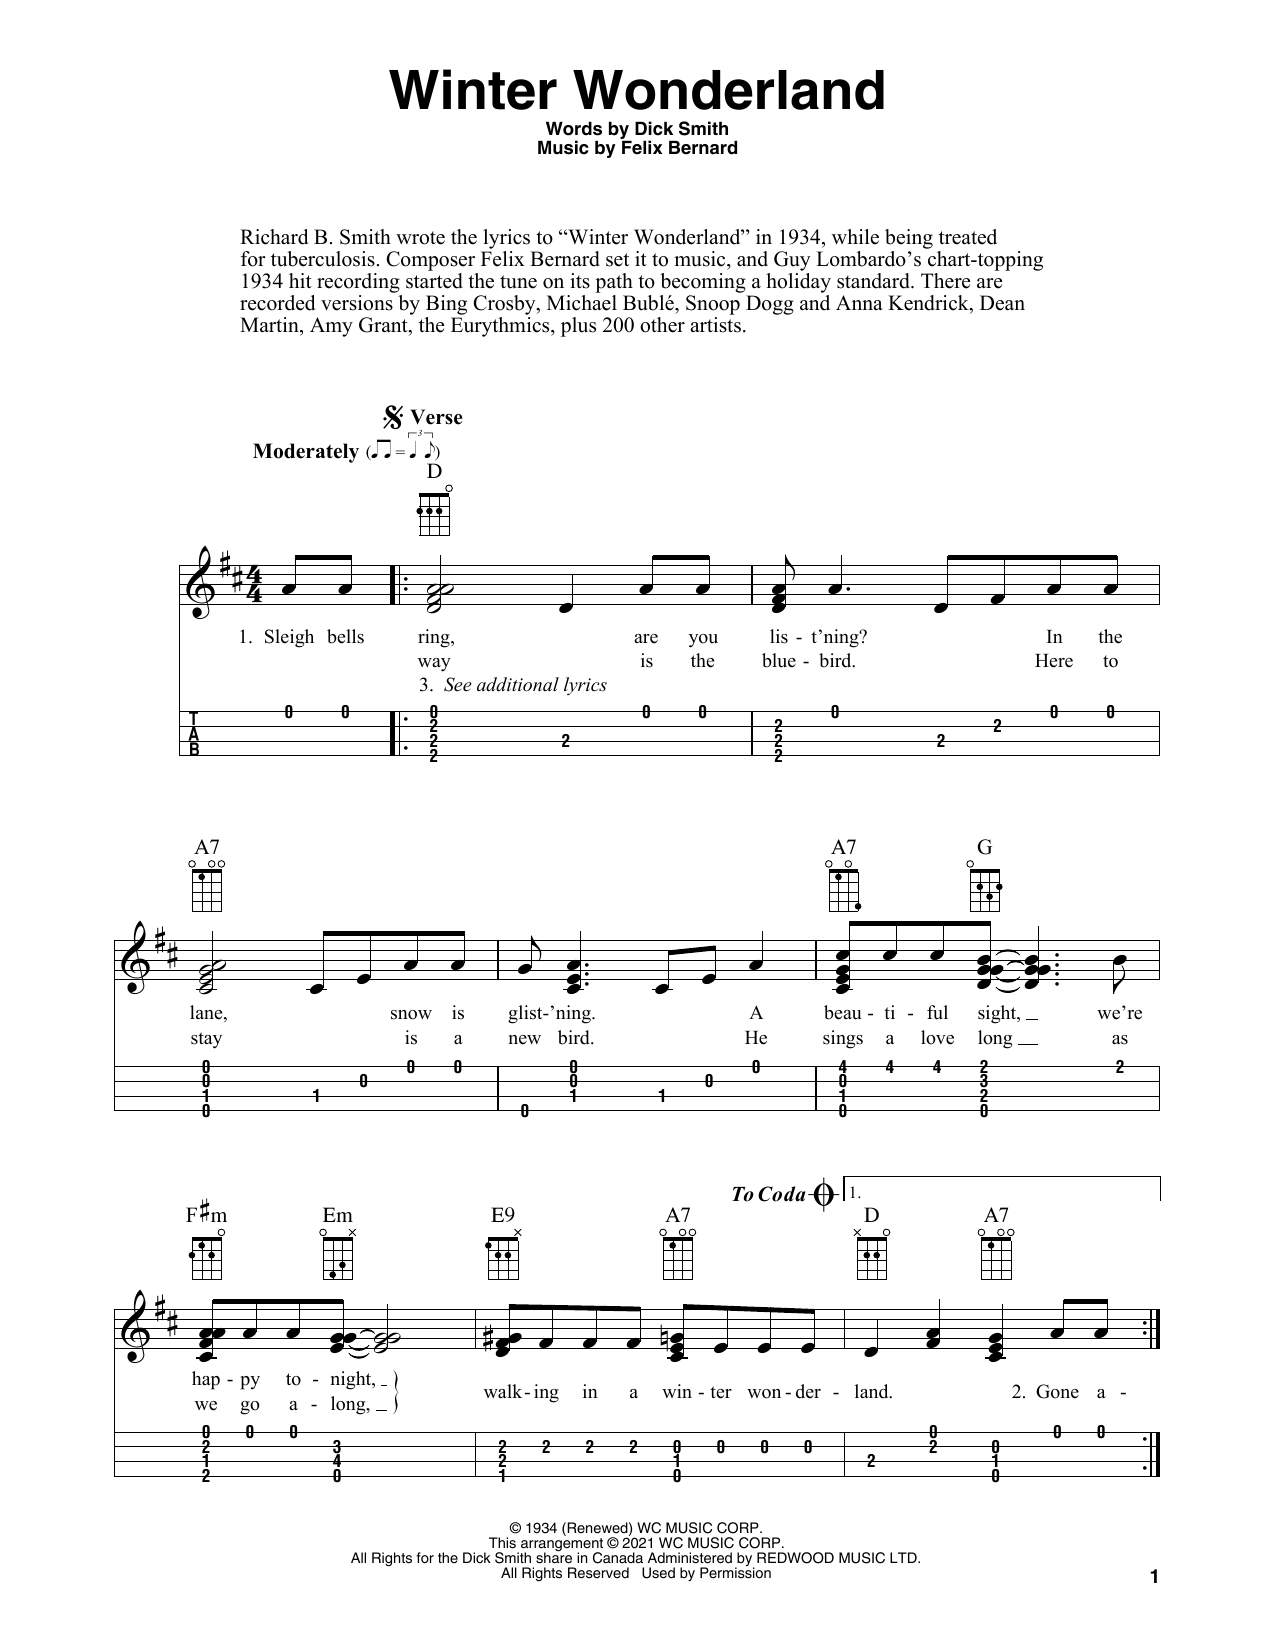 Felix Bernard Winter Wonderland (arr. Fred Sokolow) Sheet Music Notes & Chords for Ukulele - Download or Print PDF